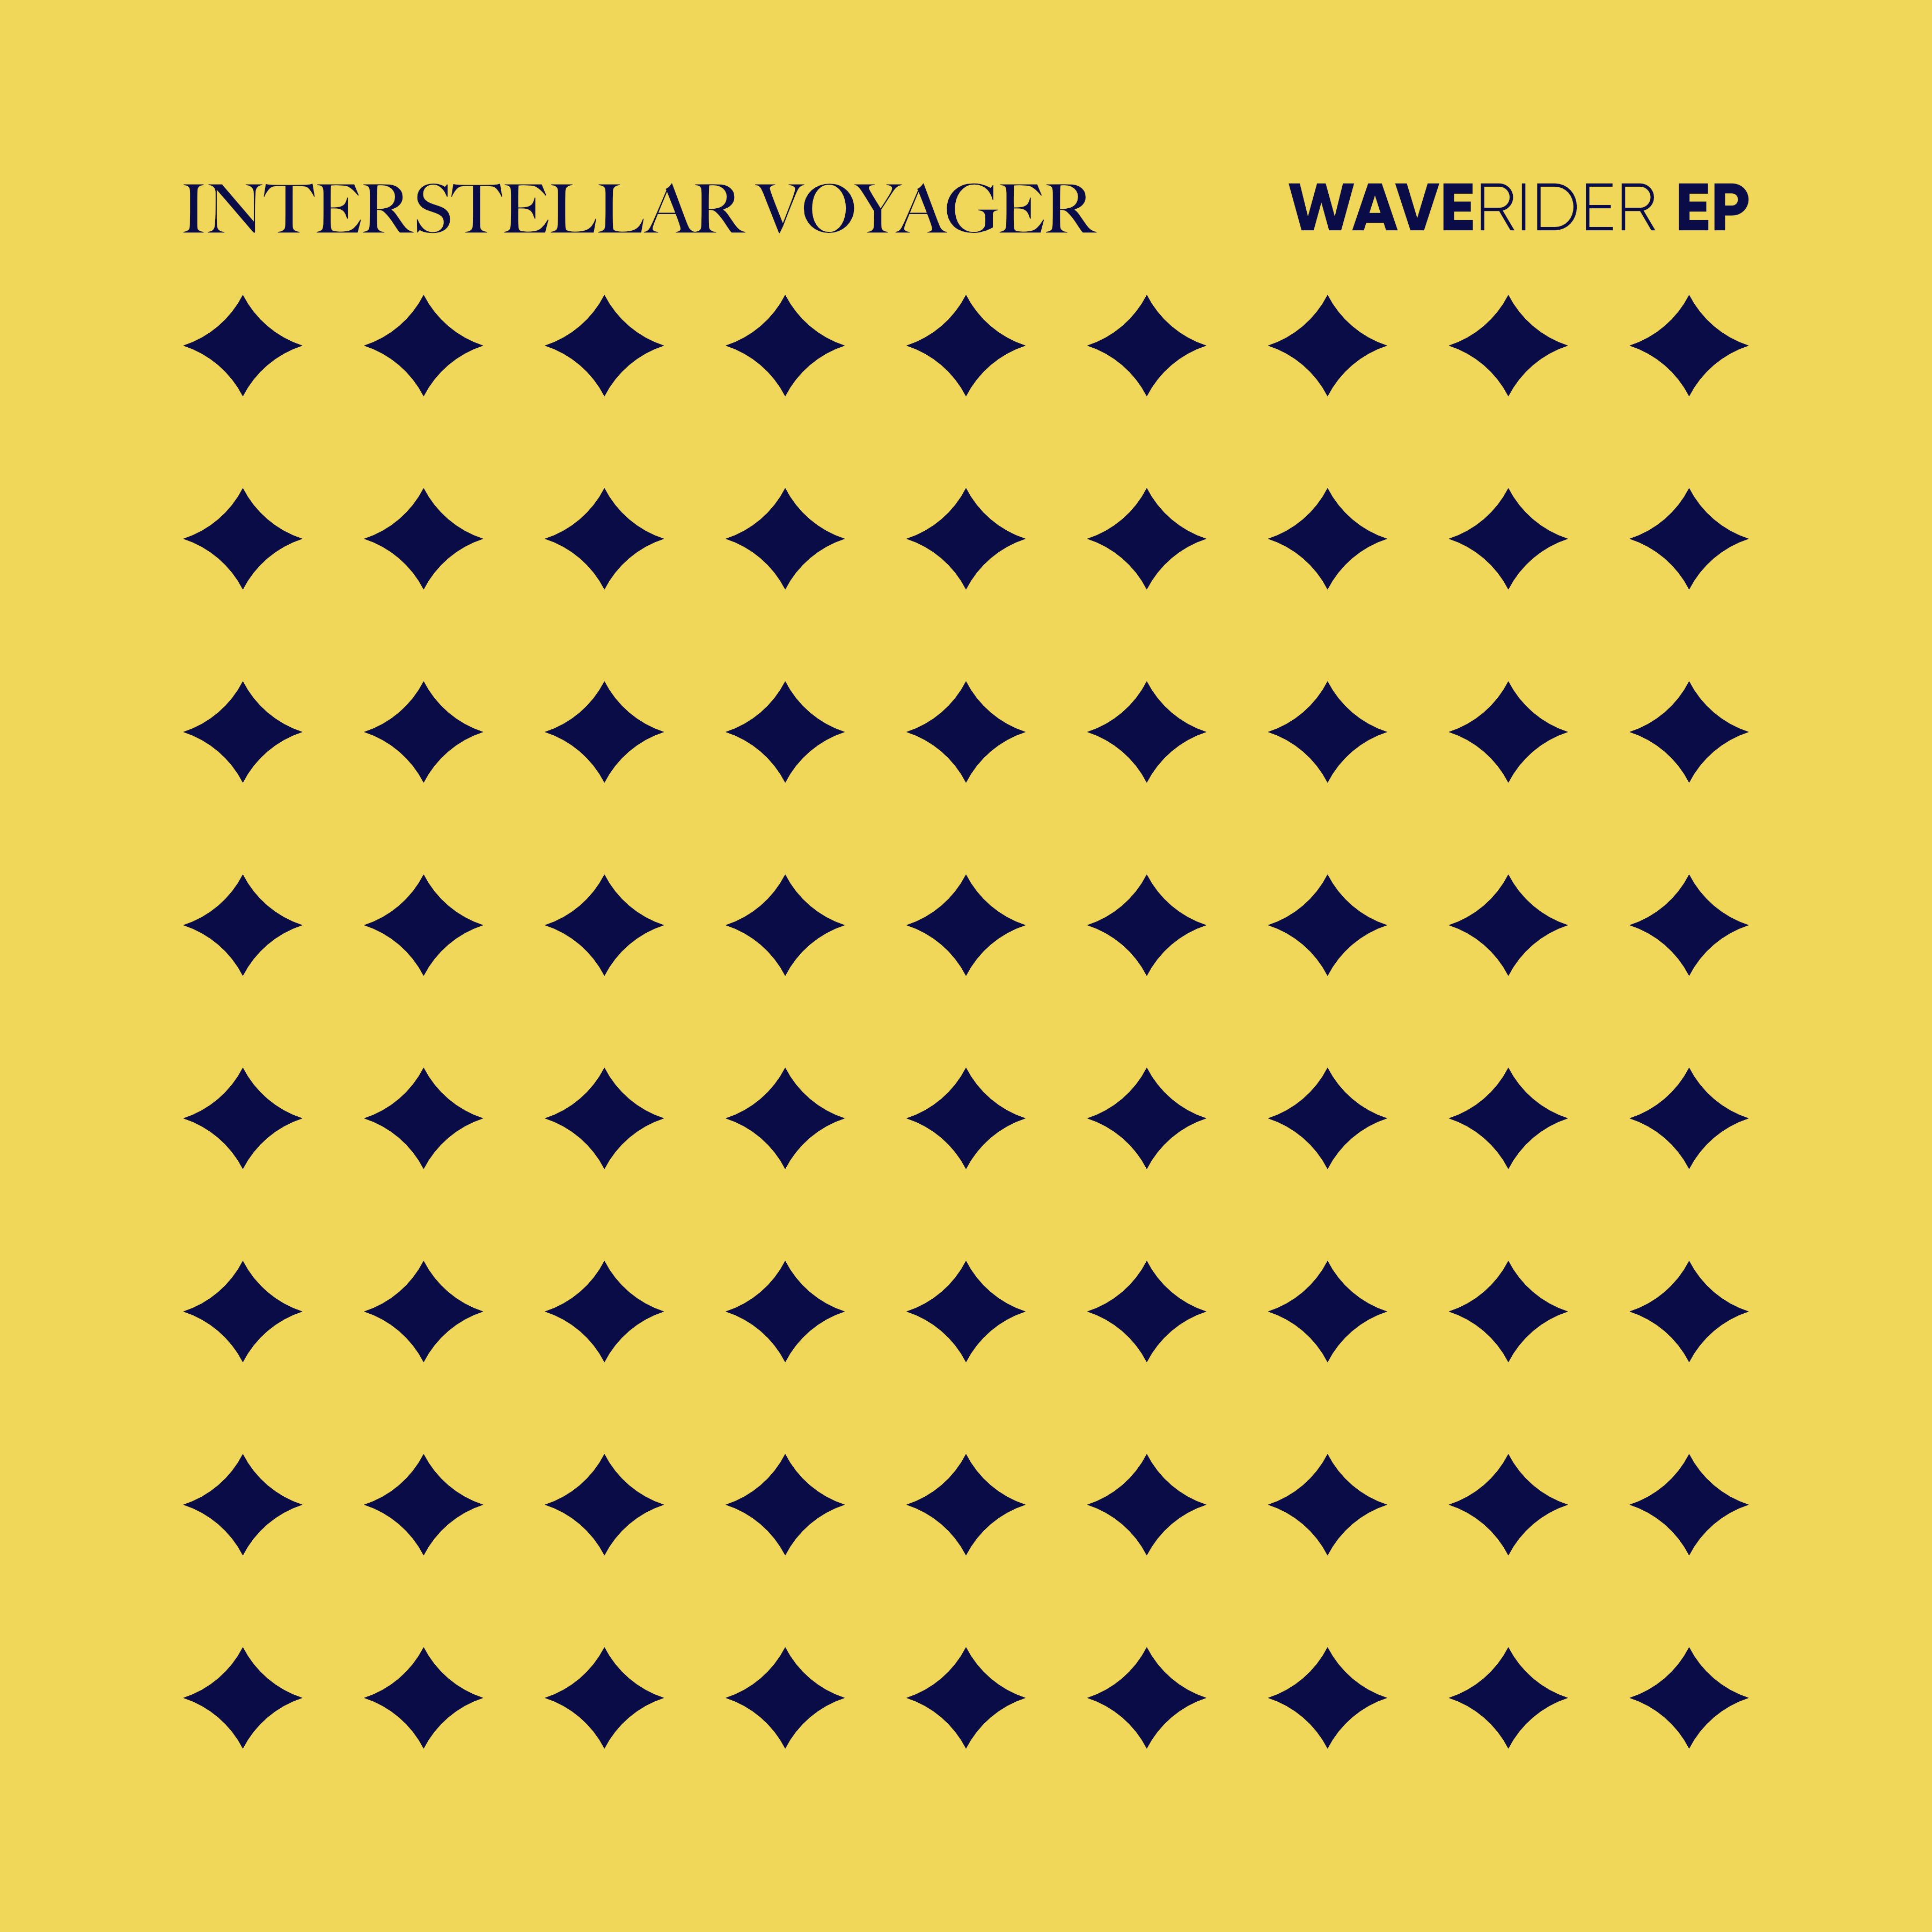 Album artwork for the Waverider EP, by Interstellar Voyager